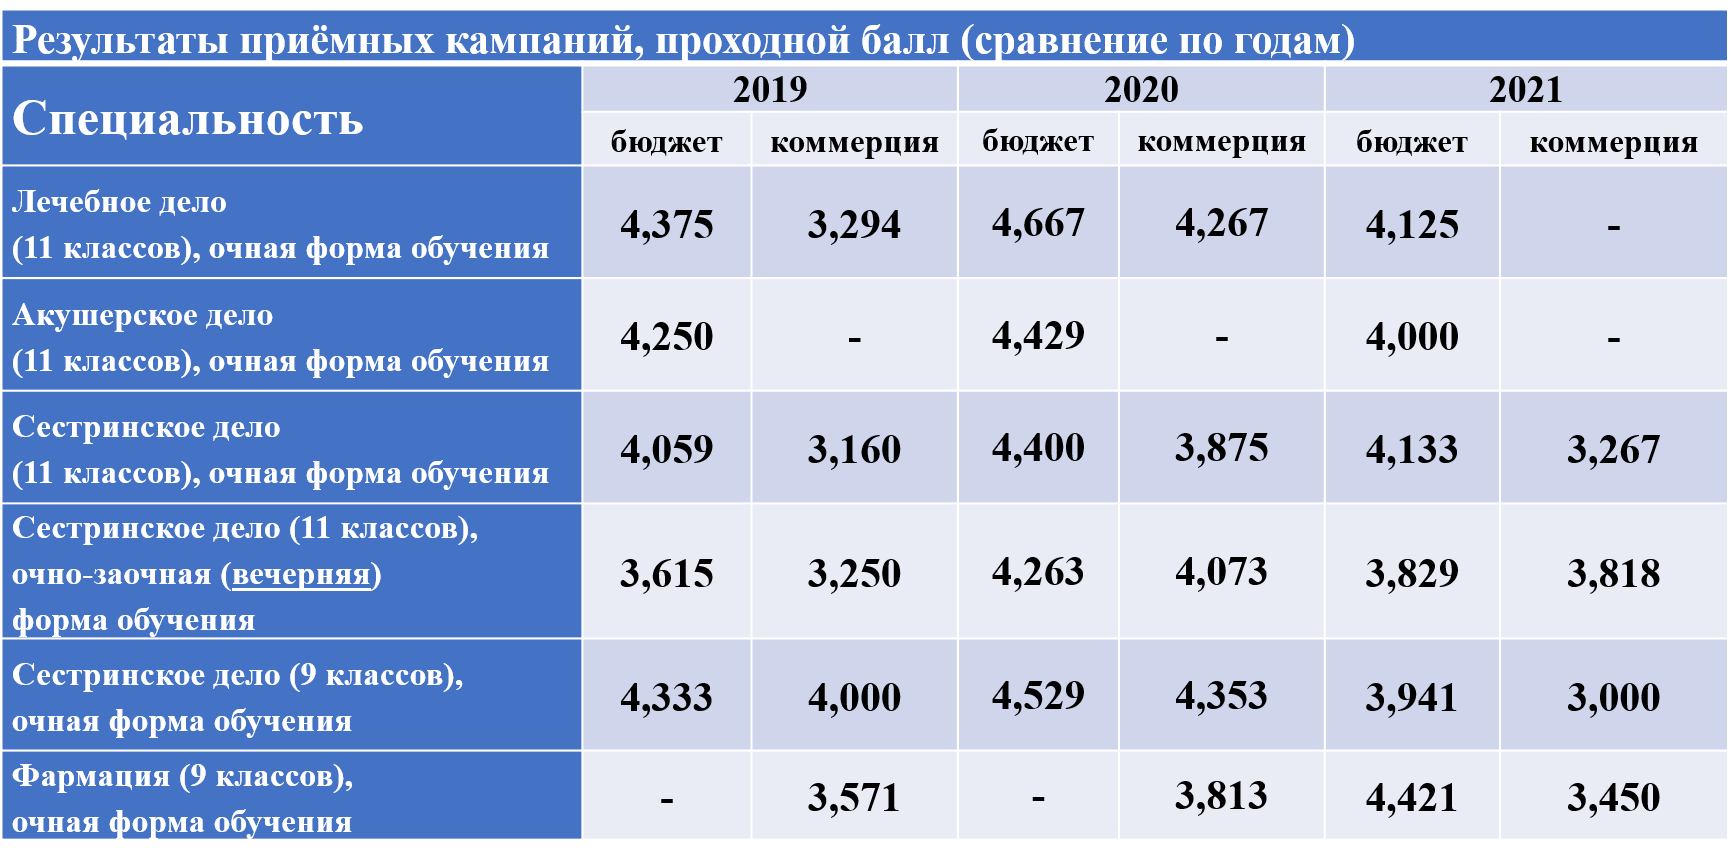 Rezultaty-priyomnyh-kampanij_2021.png (92 KB)